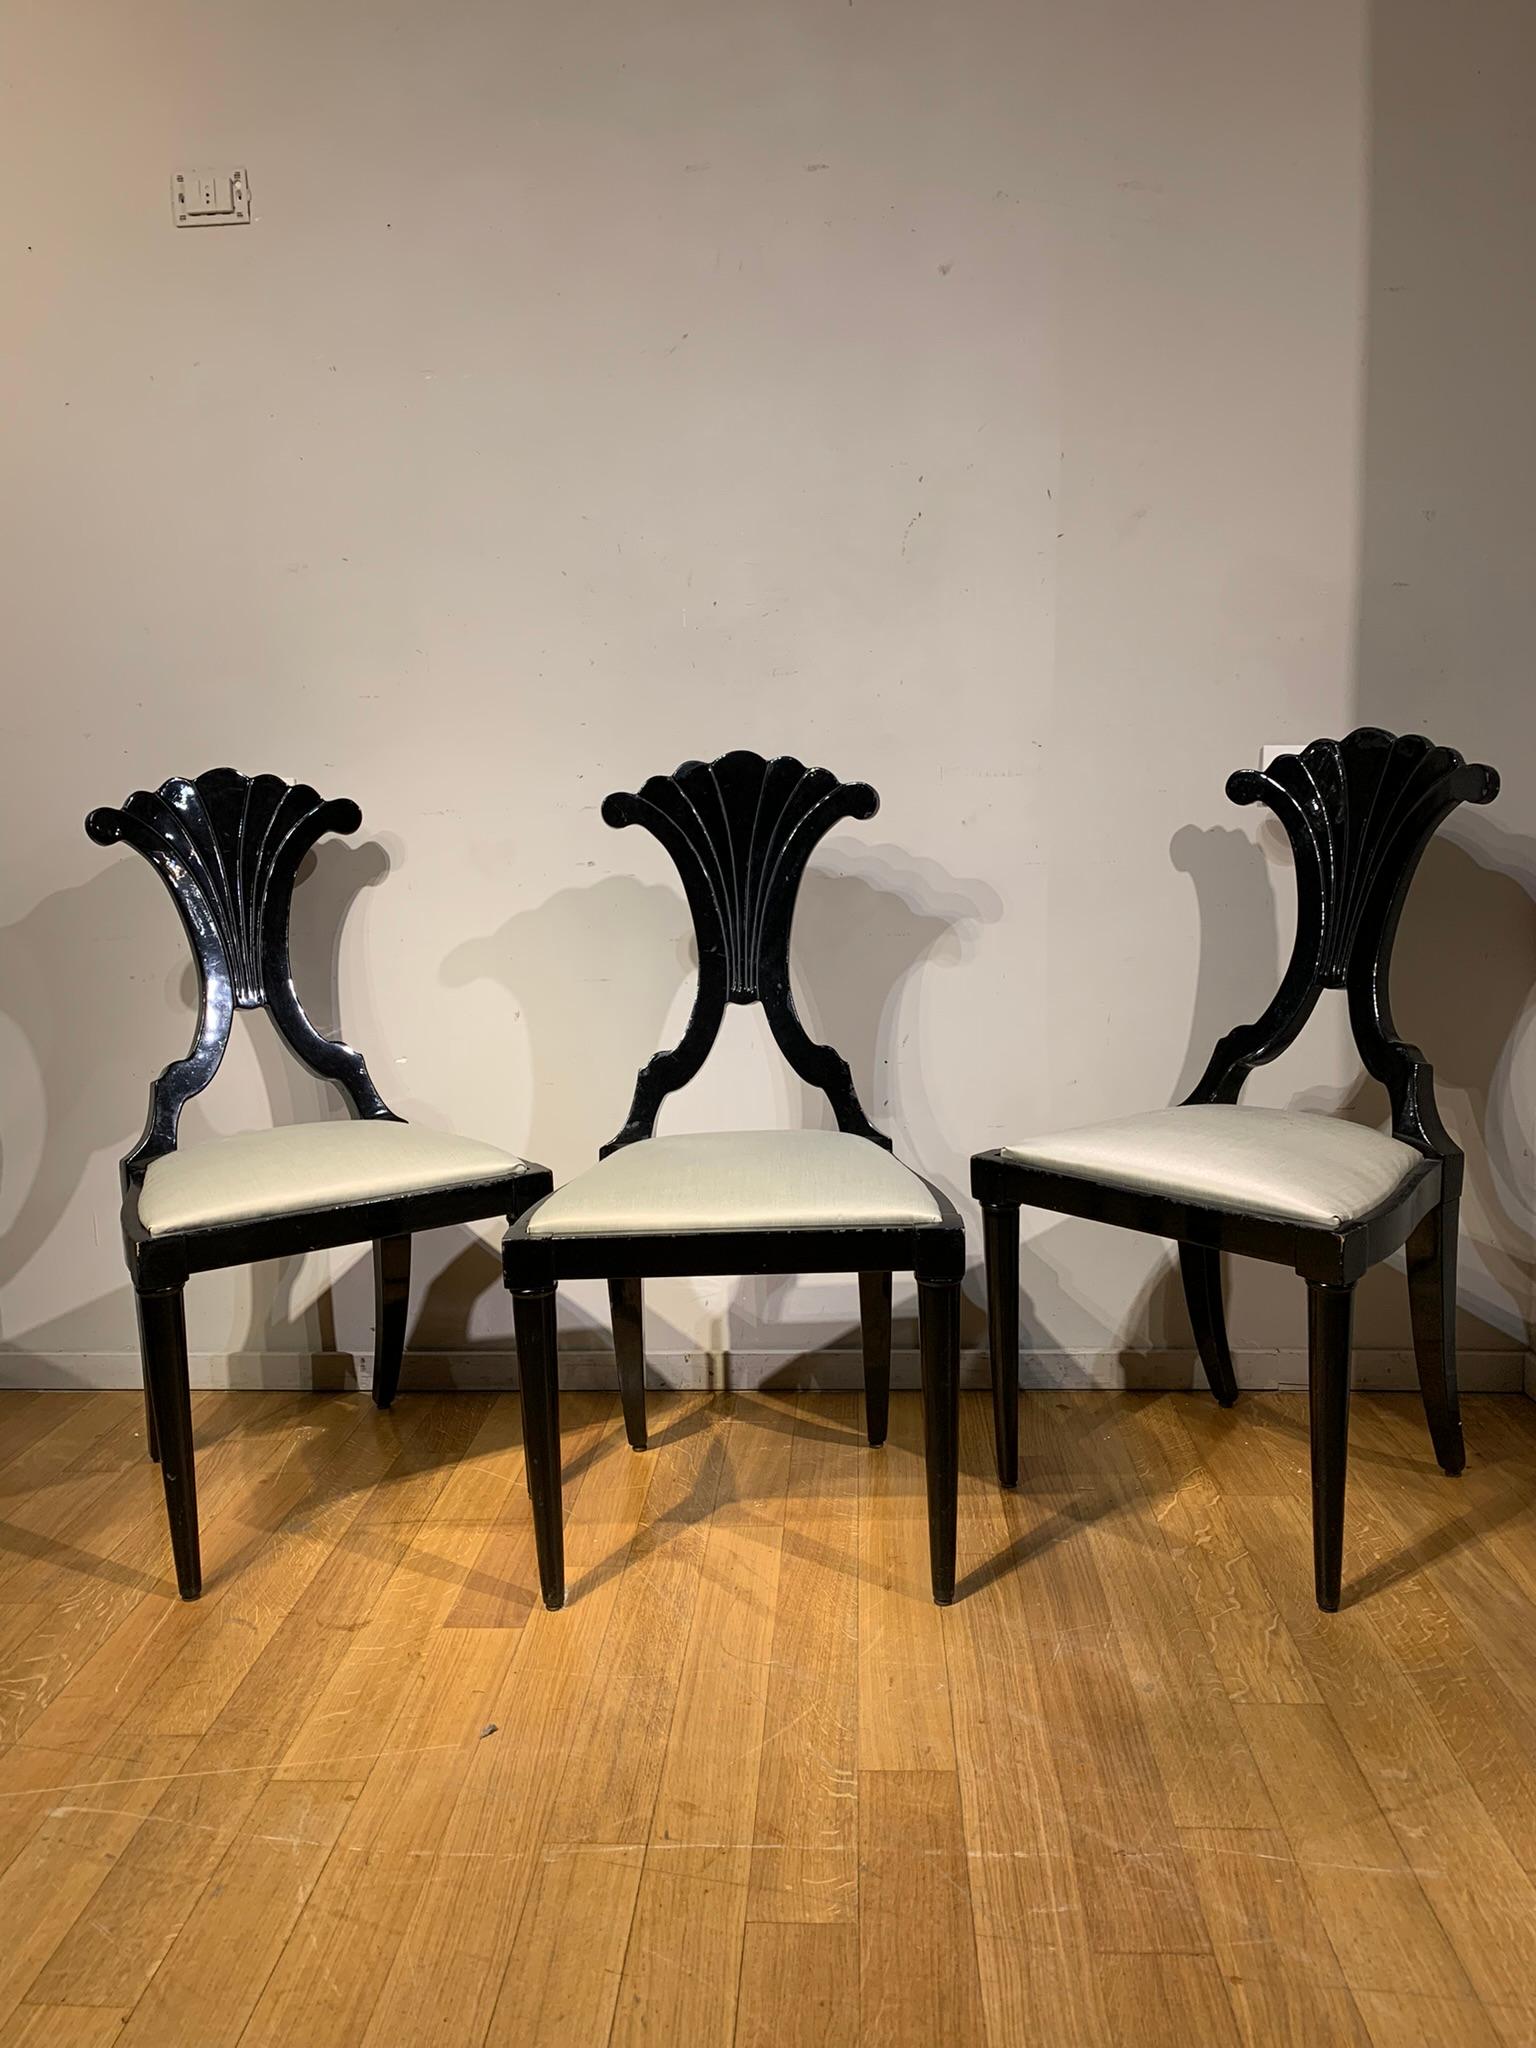 Elegantes Set bestehend aus vier ebonisierten Holzstühlen aus der Mitte des 19. Jahrhunderts aus französischer Produktion. Diese Stühle sind mit einer Kreideunterlage versehen, die ihnen ein raffiniertes und unverwechselbares Aussehen verleiht. Das